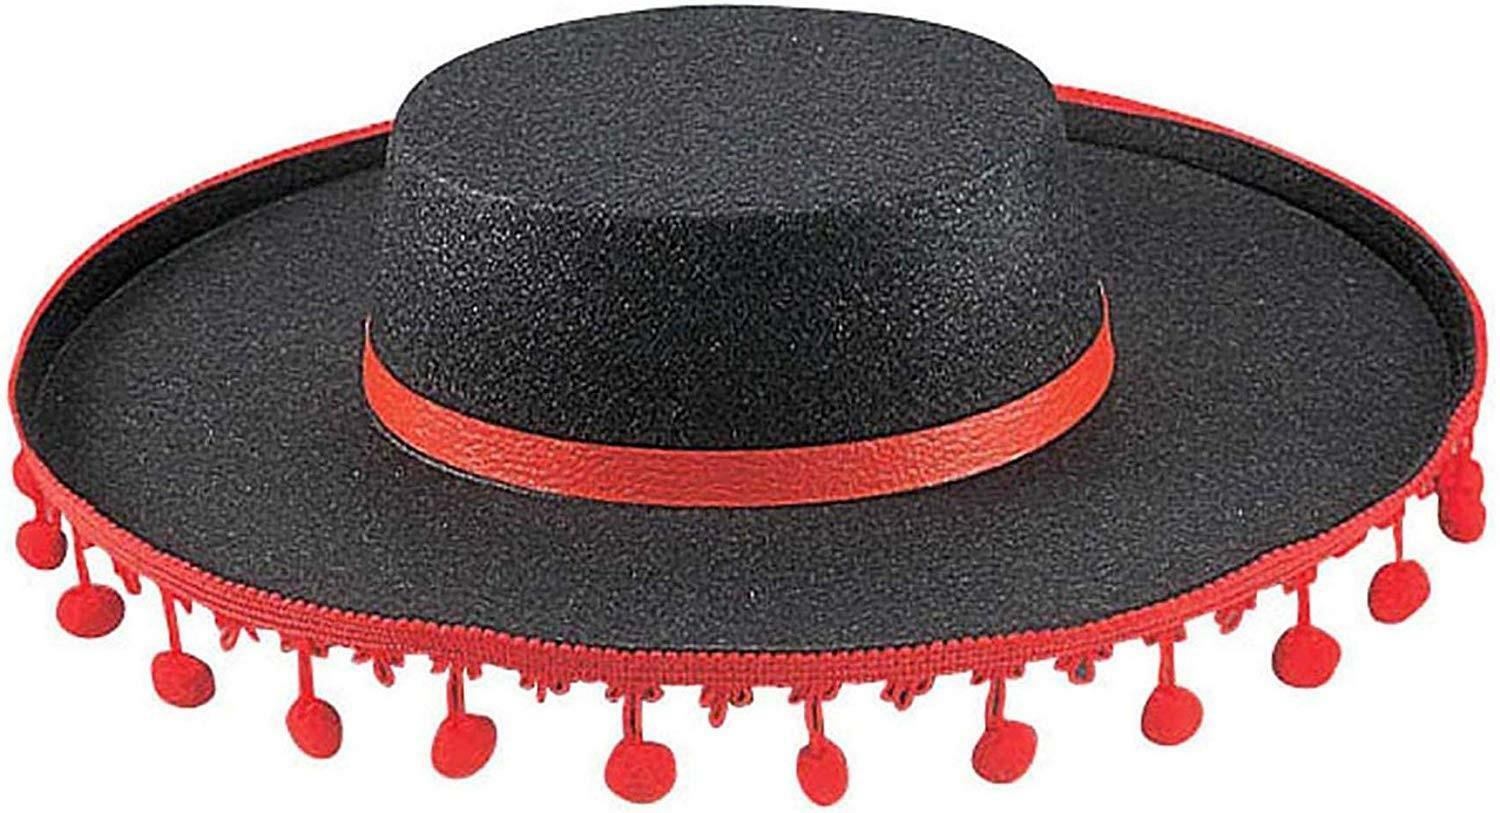 widmann cappello flamenco